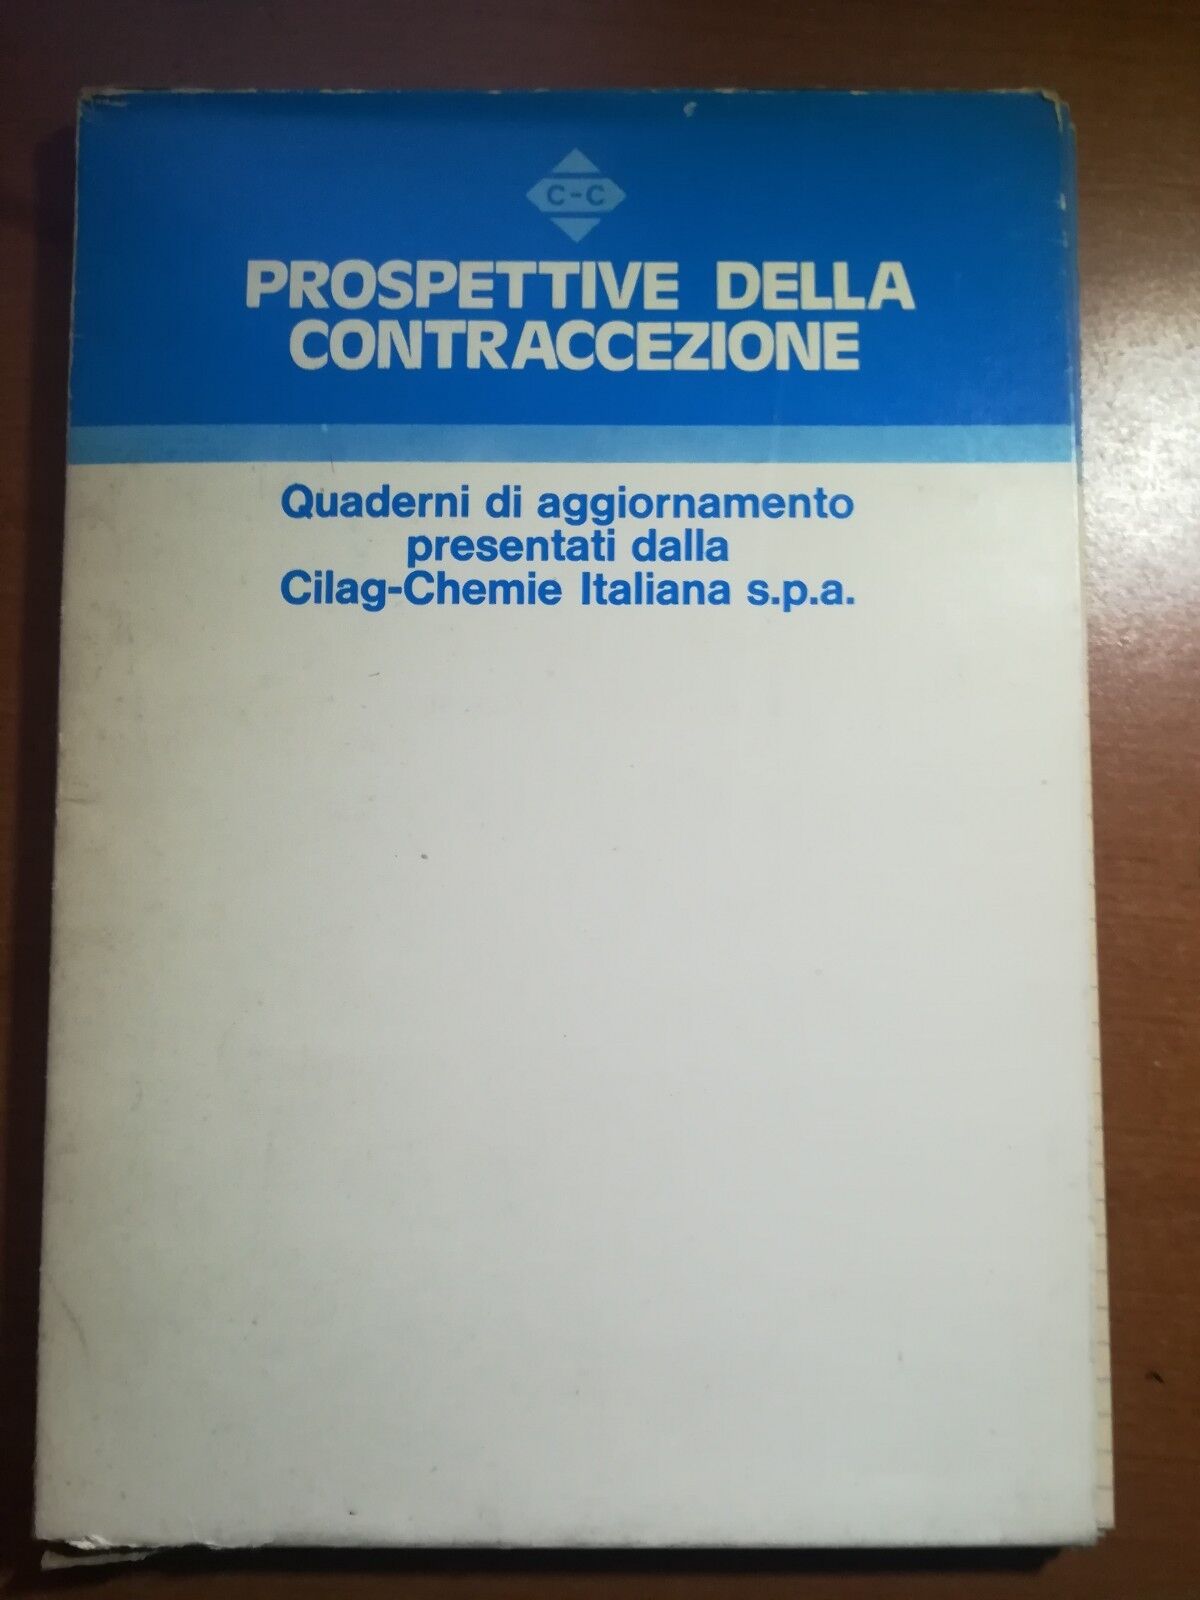 Prospettivi della contraccezione  - AA.VV. - Cilag-Chemie - 1980  - M